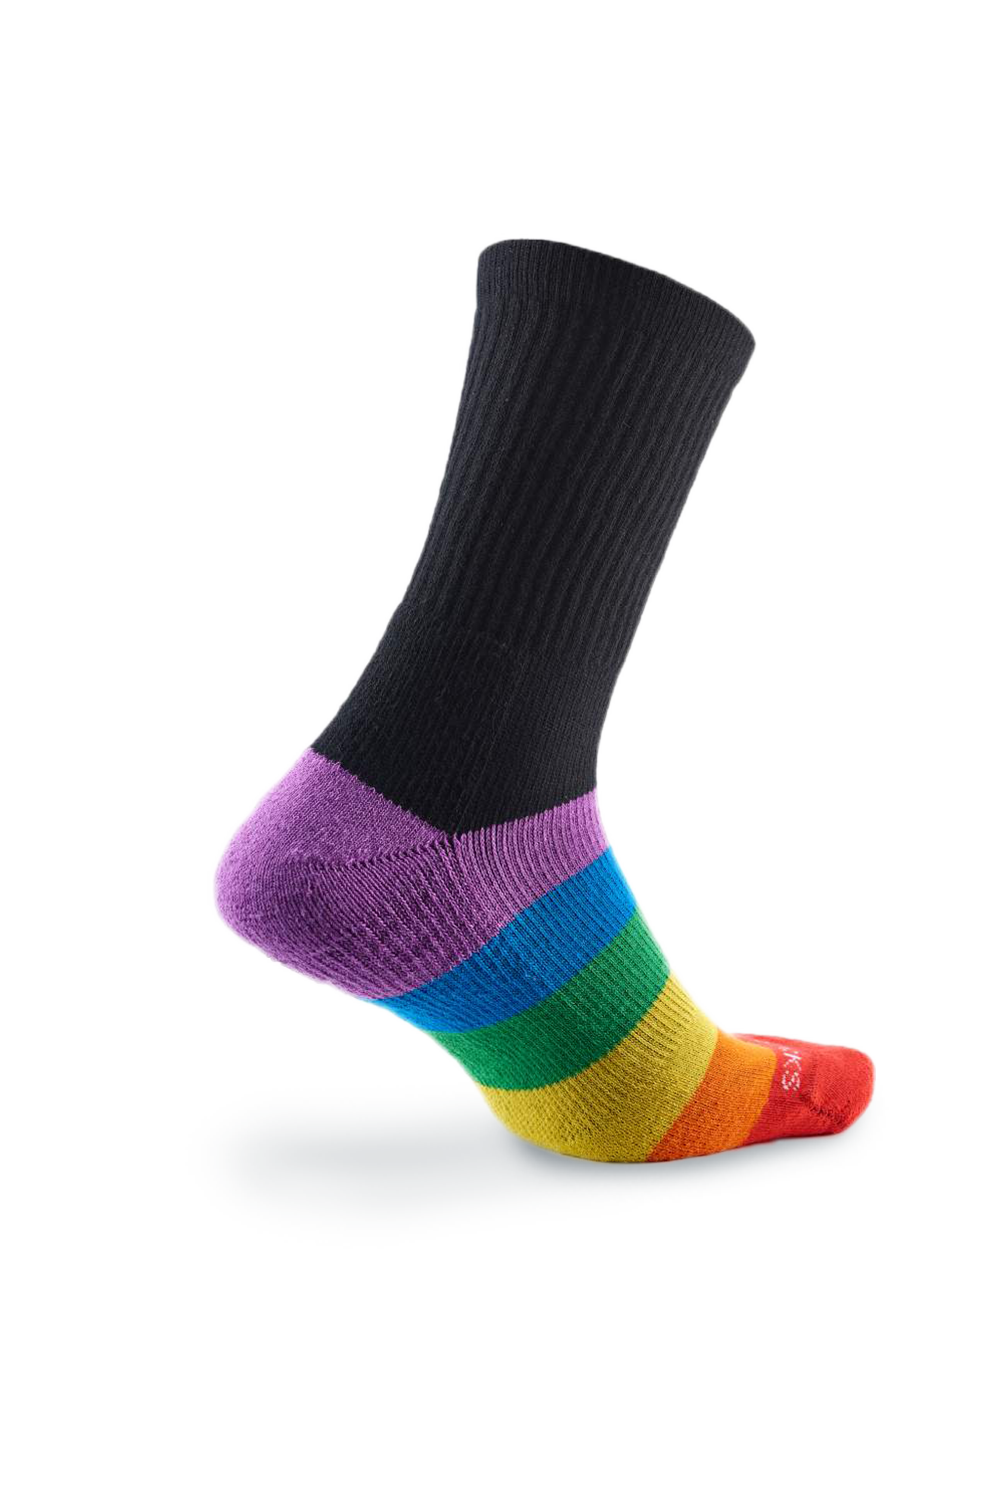 Kikko Socks Athlete Crew II (Rainbow Black)